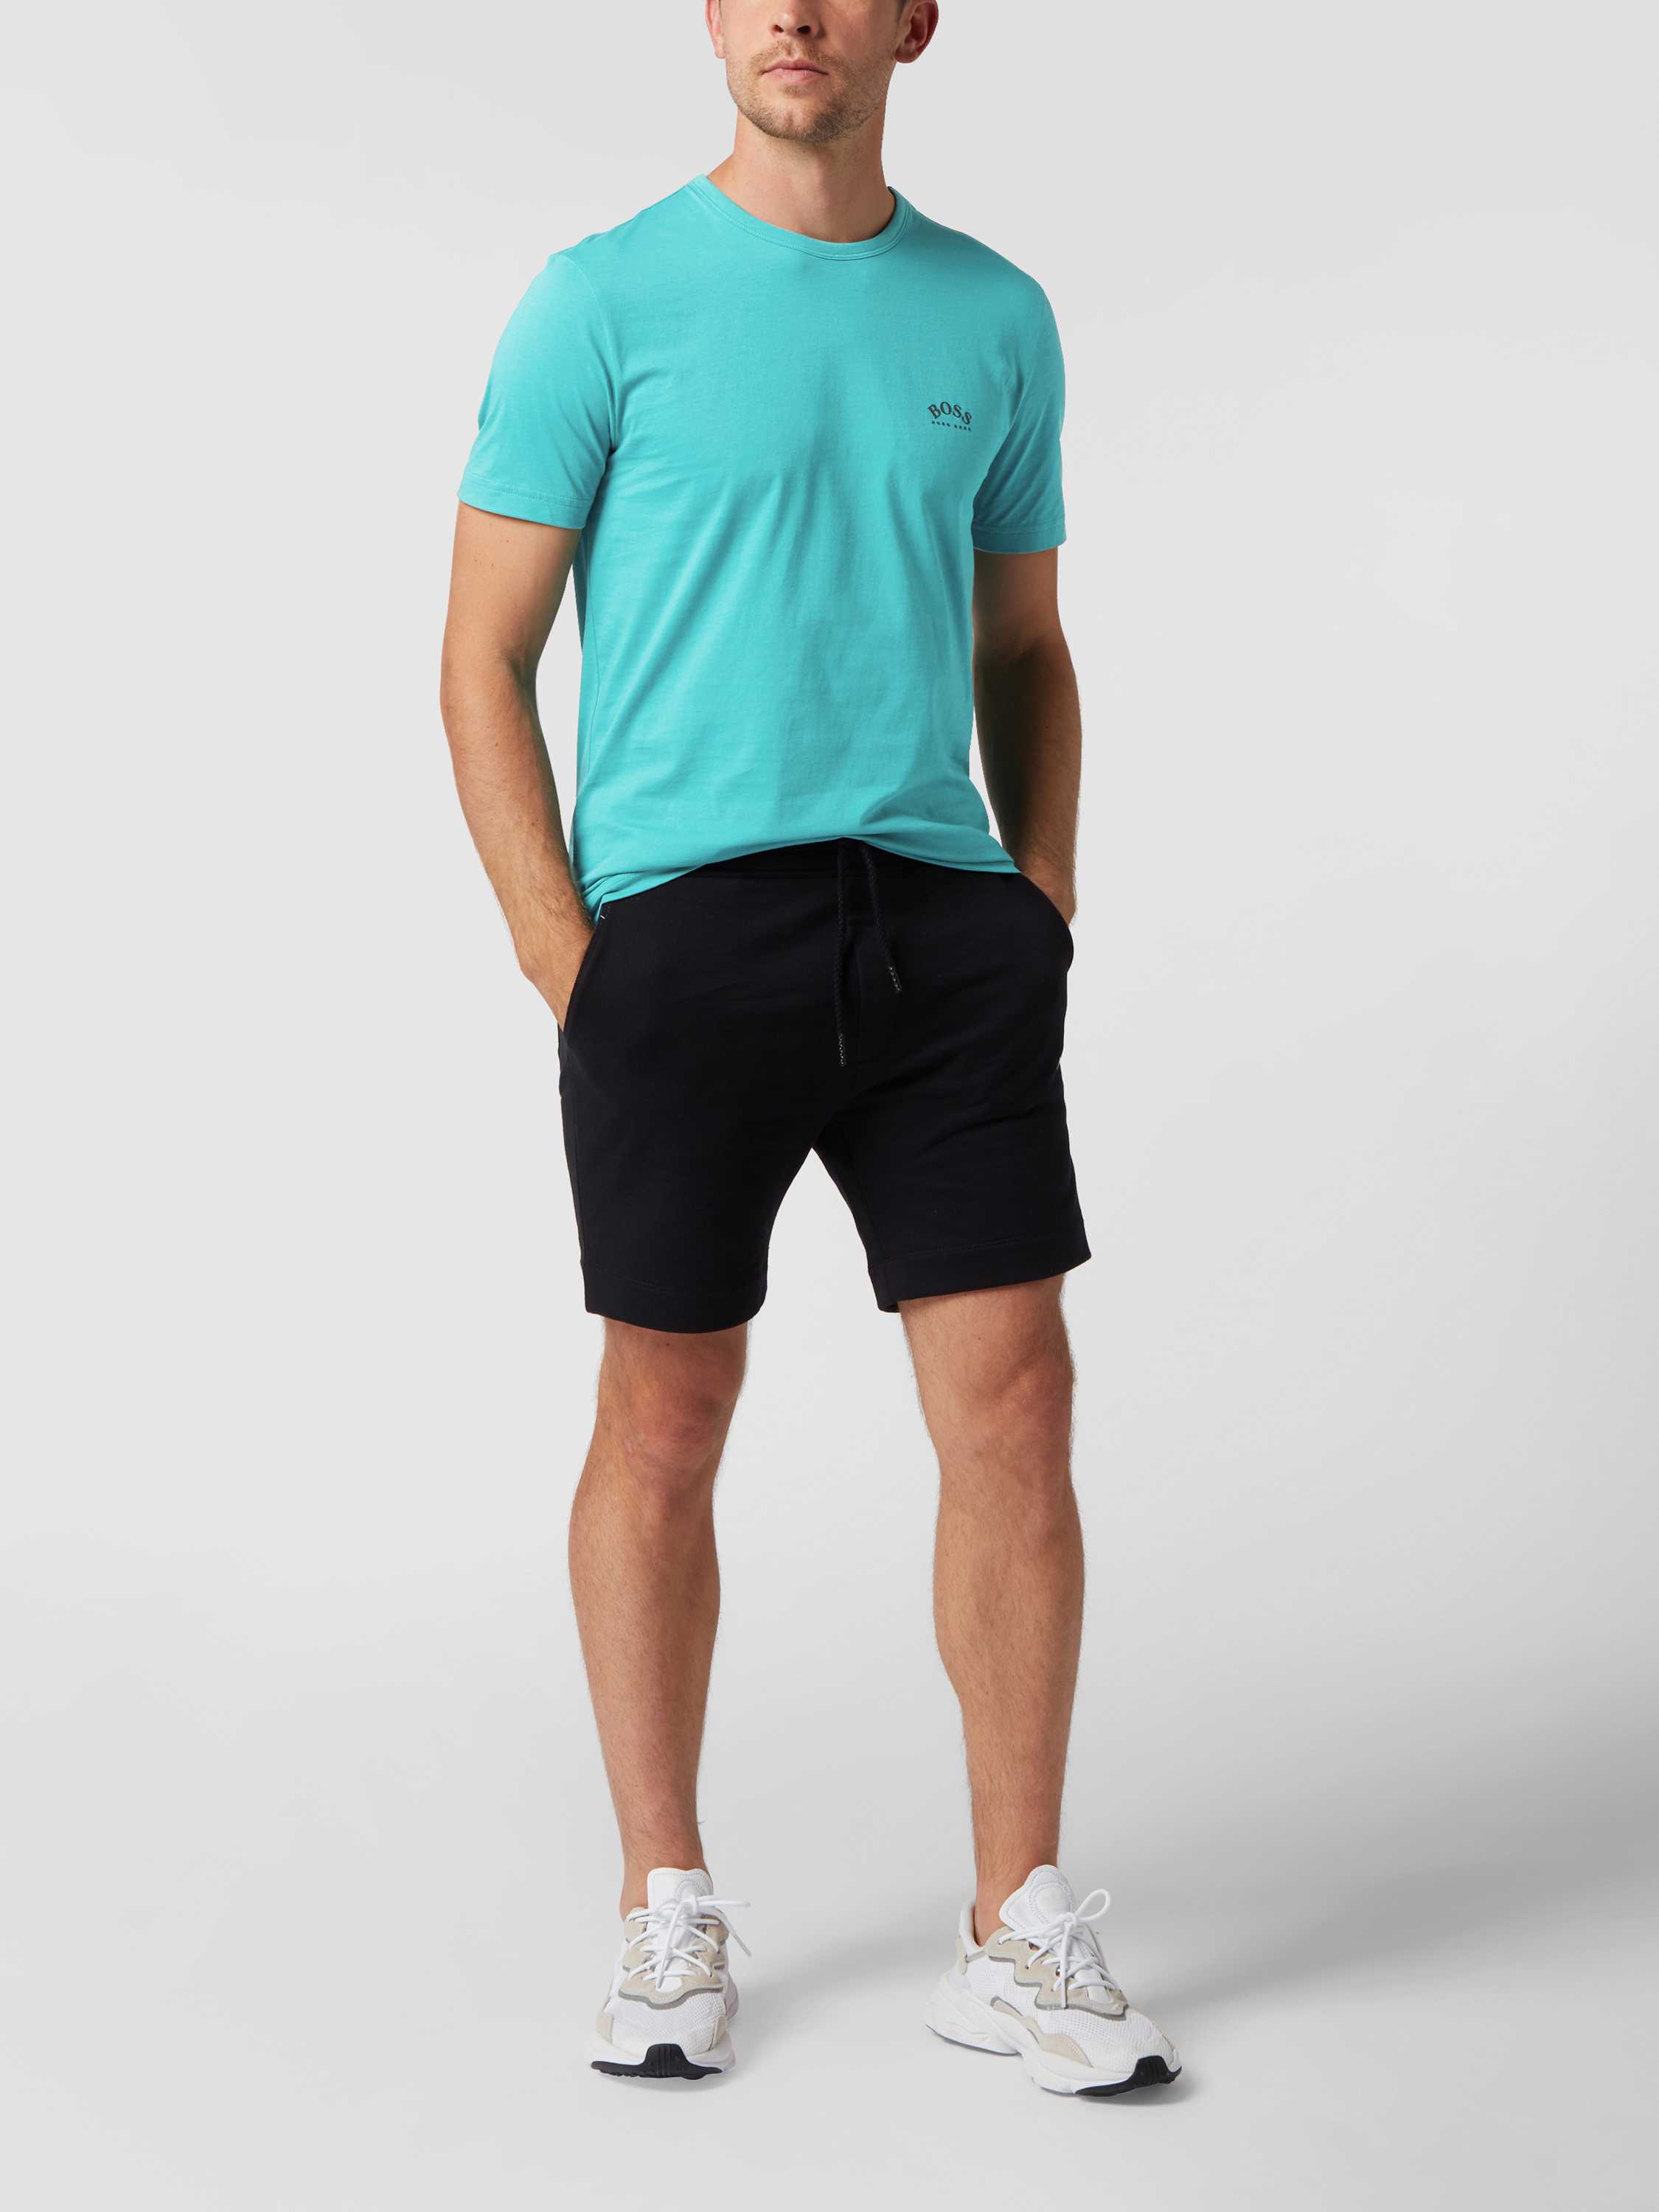 schedel Regeneratie kleding stof BOSS Athleisurewear T-shirt van puur katoen, model 'Tee Curved' in  smaragdgroen online kopen | P&C